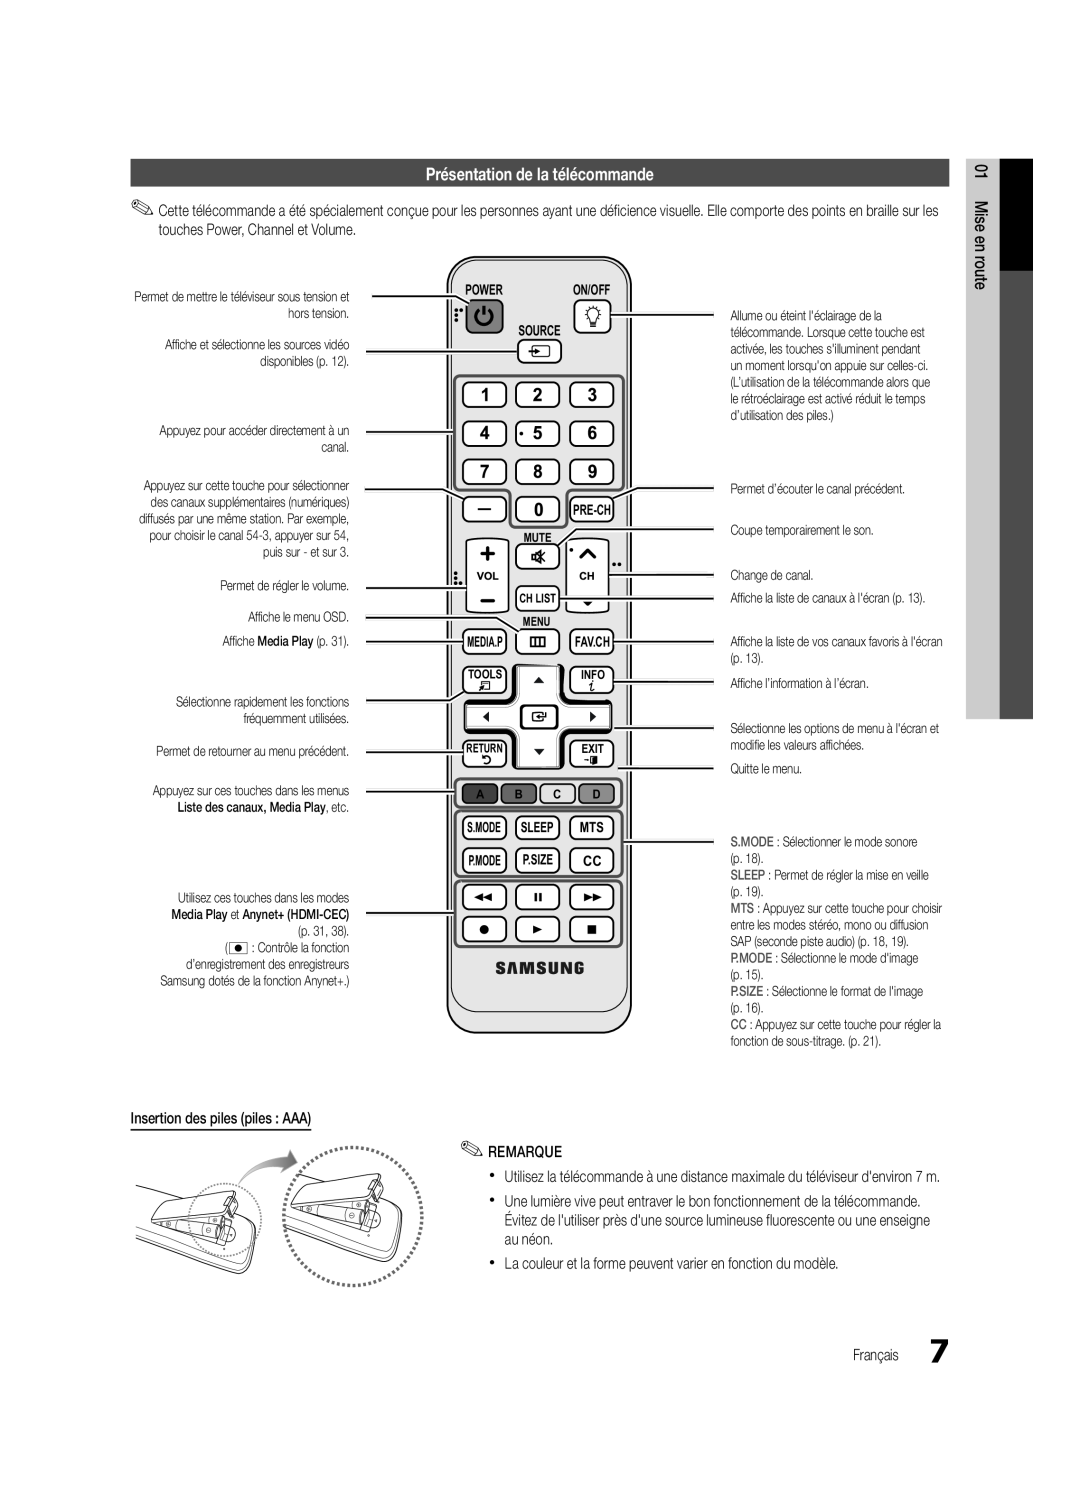 Samsung UC6300-ZC Présentation de la télécommande, Power On/Off Source Pre-Ch, S.Mode Sleep Mts P.Mode P.Size Cc 